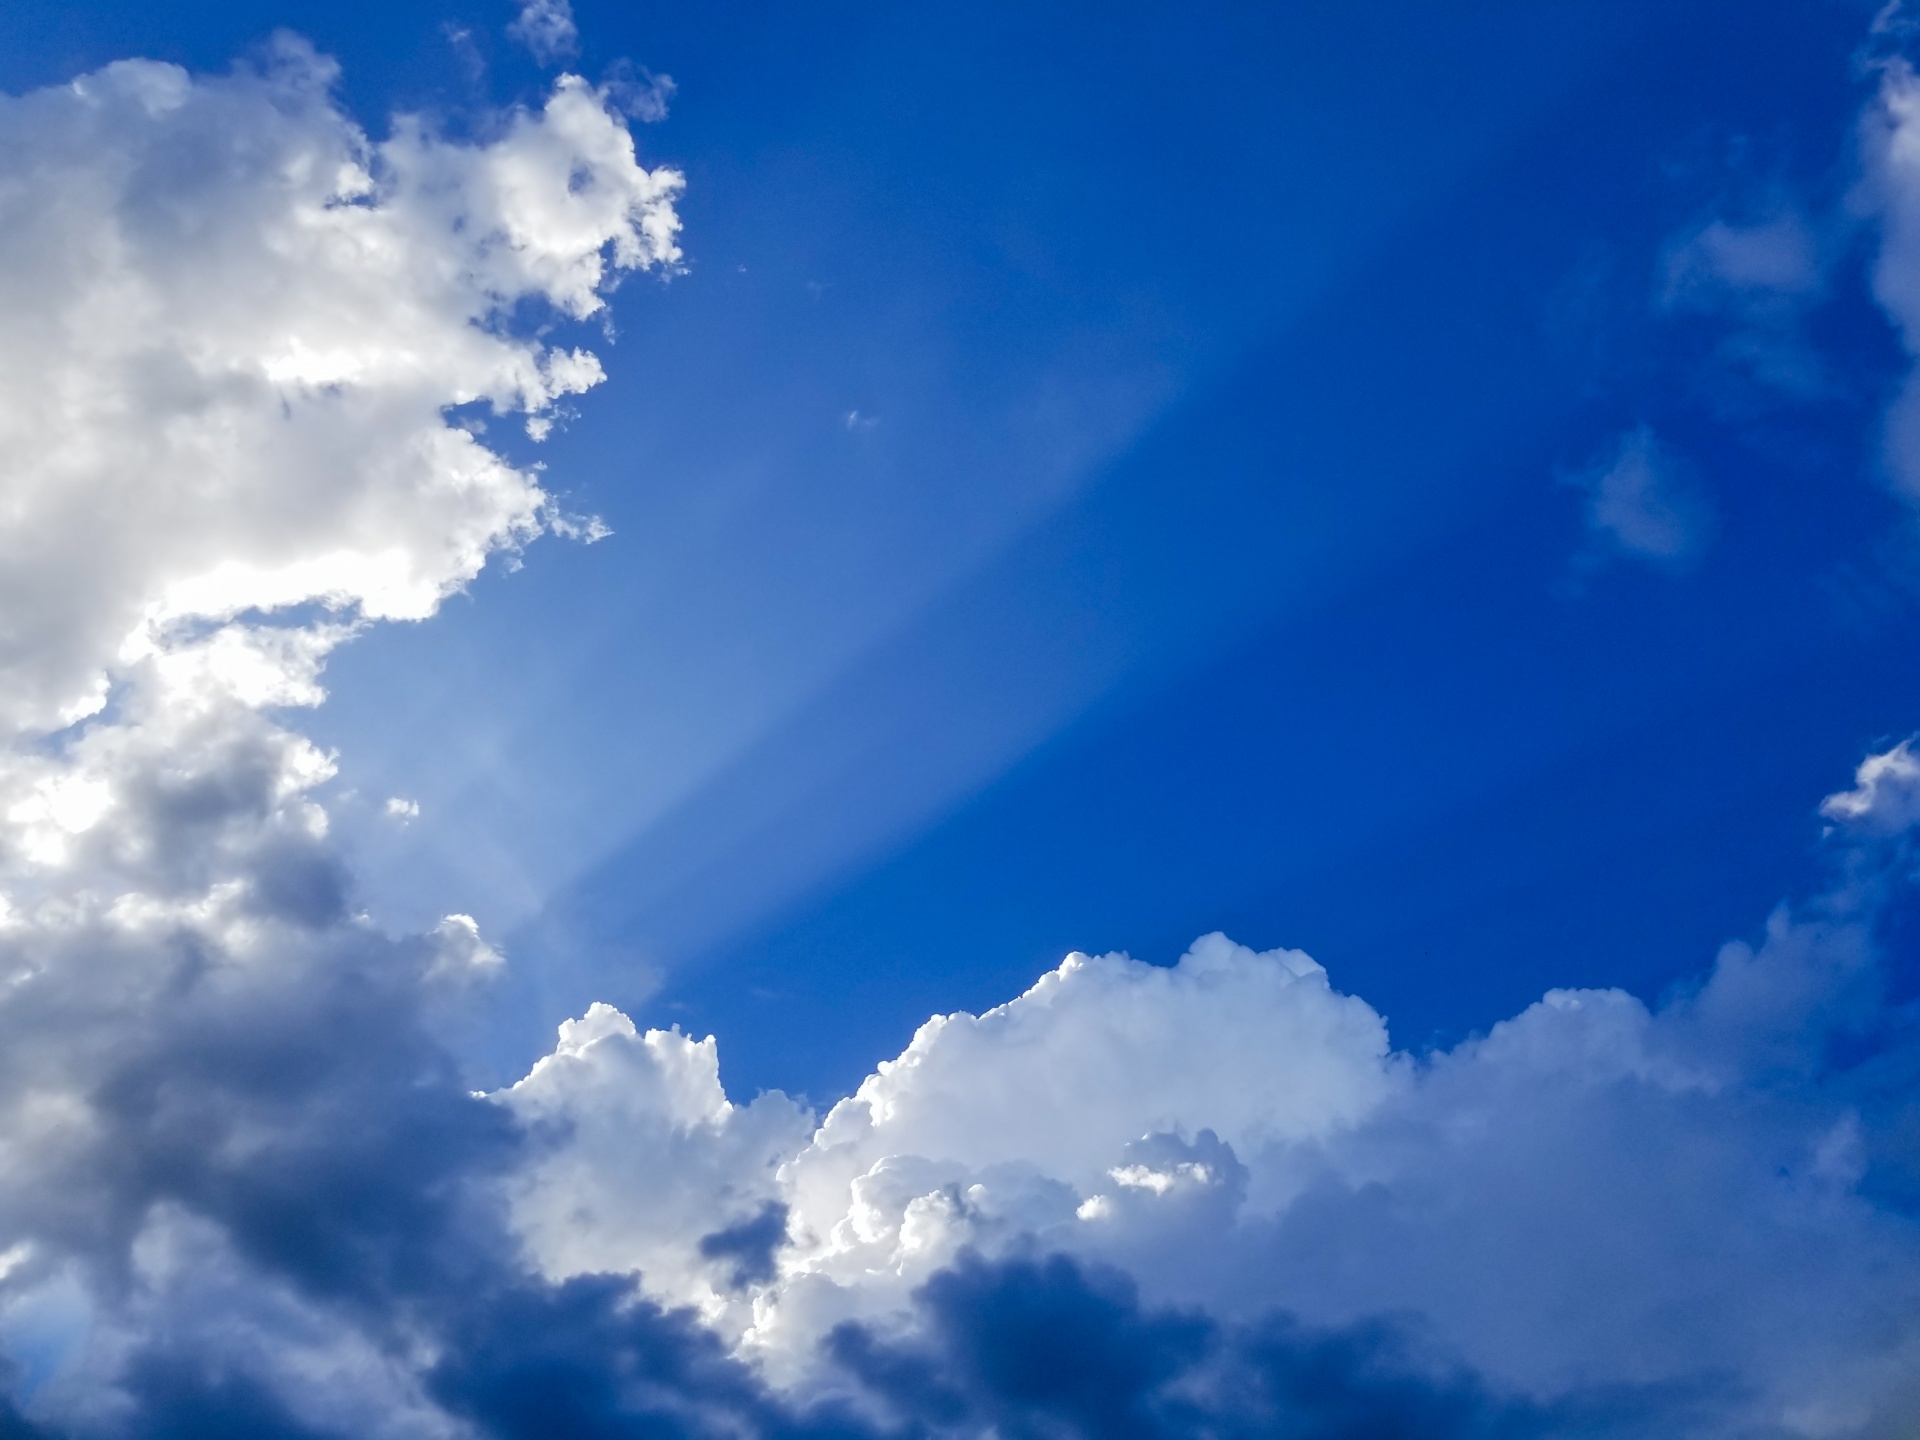 雲を通る太陽の光線 無料画像 Public Domain Pictures